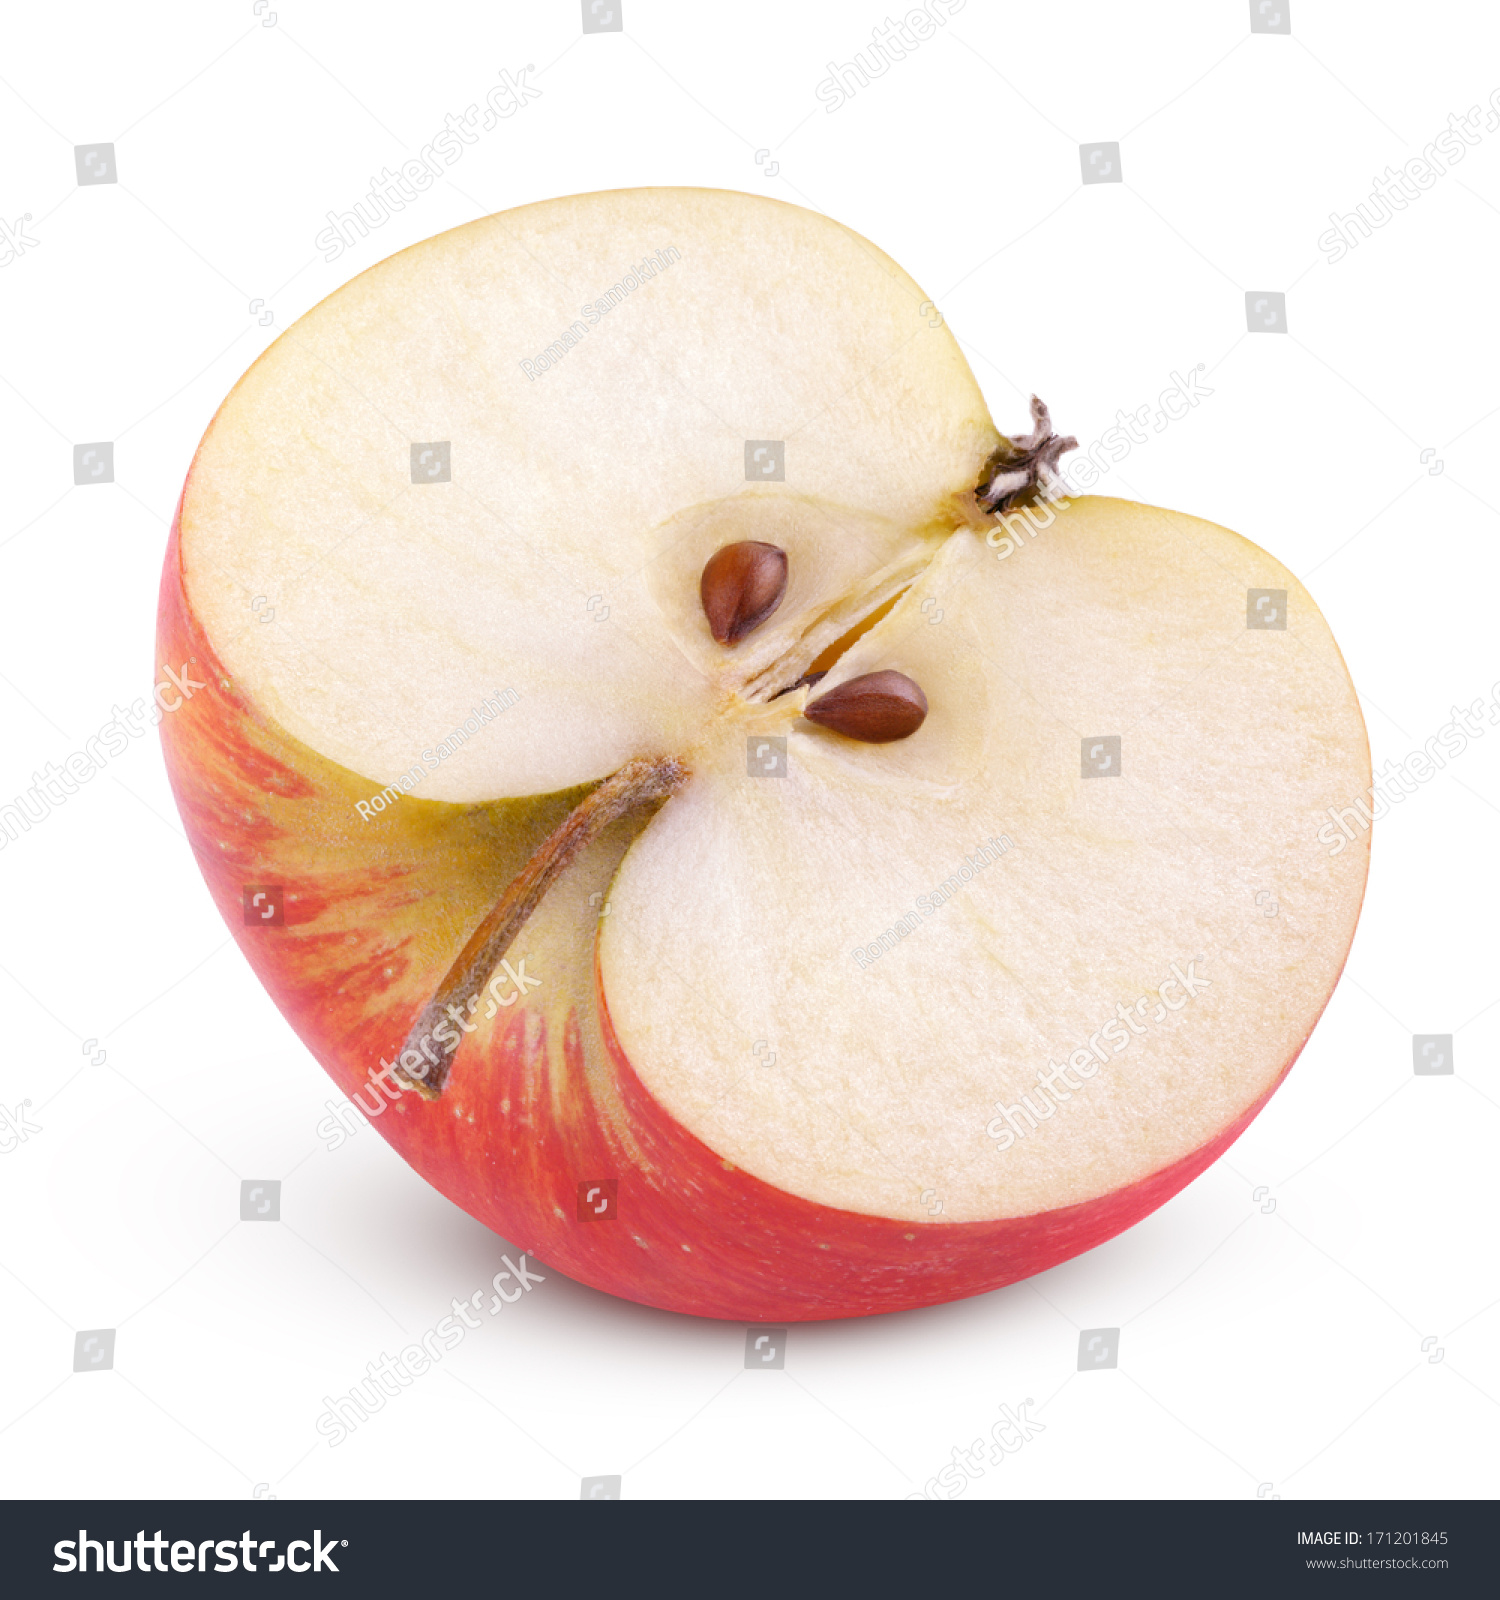 косточки яблока фото